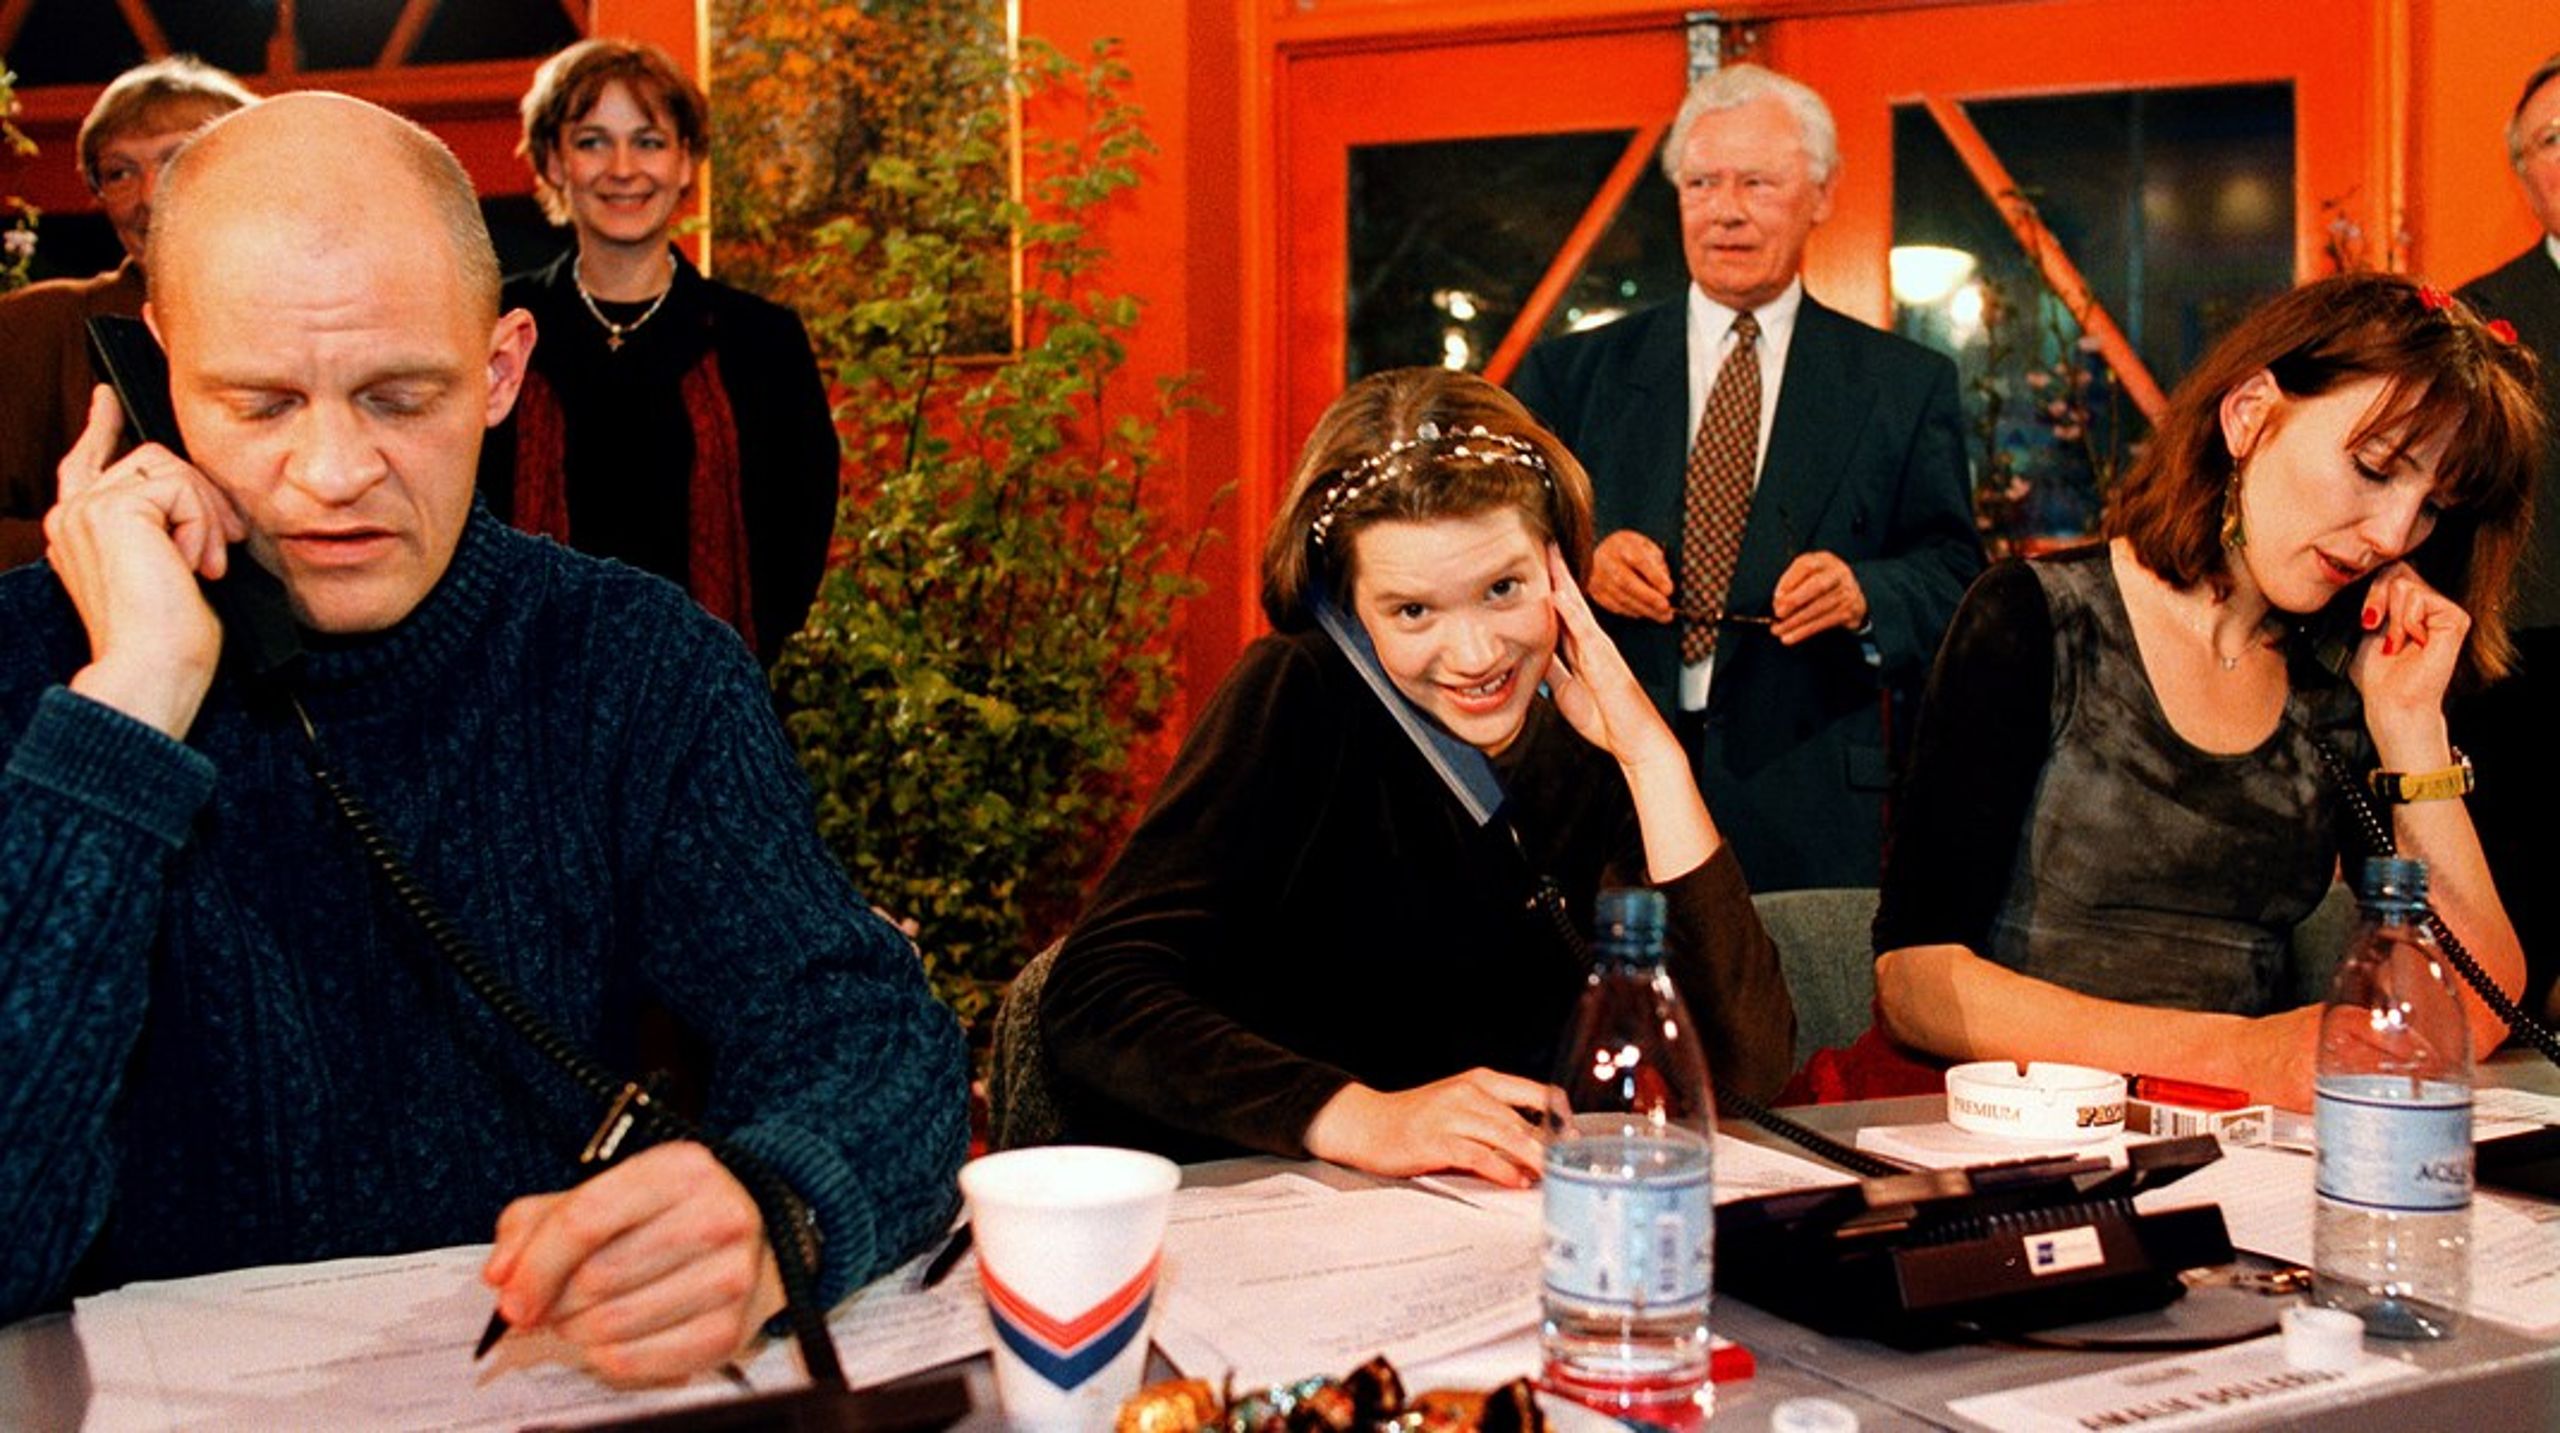 Lars Bom, Amalie Dollerup og Andrea Vagn Jensen besvarer opkald om donationer under DR og TV2s første fælles indsamlingsshow 'Hjælp Balkan' i 1999. I baggrunden ses tidligere statsminister Poul Schlüter.